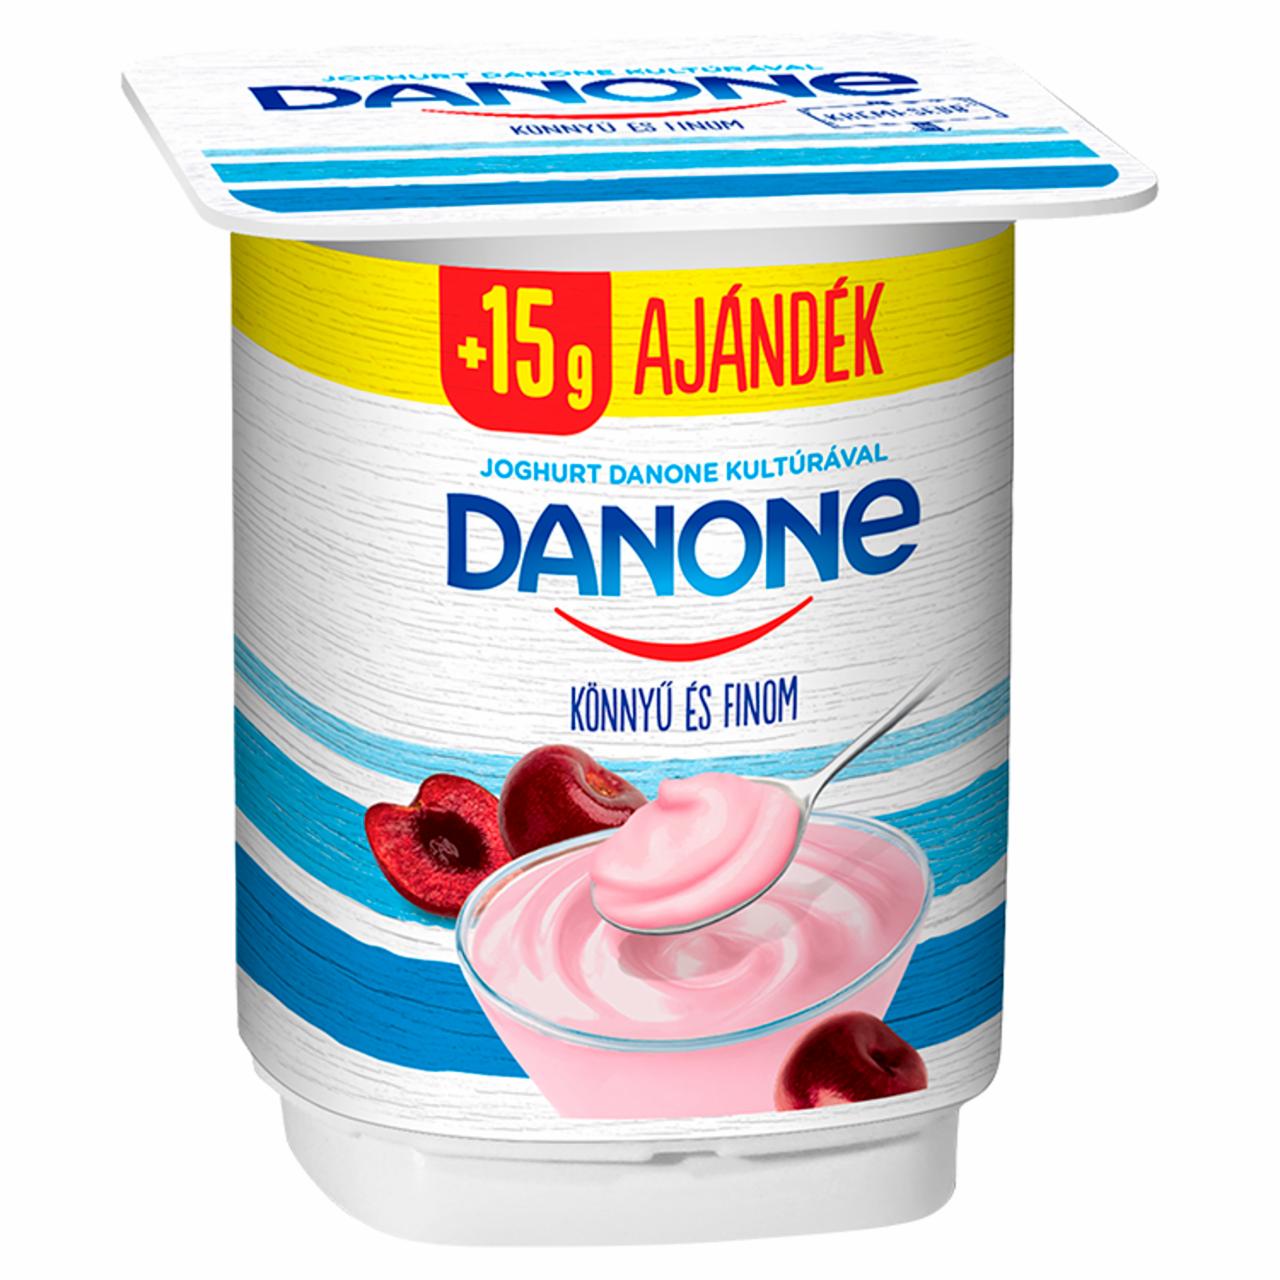 Képek - Danone meggyízű, élőflórás, zsírszegény joghurt 140 g